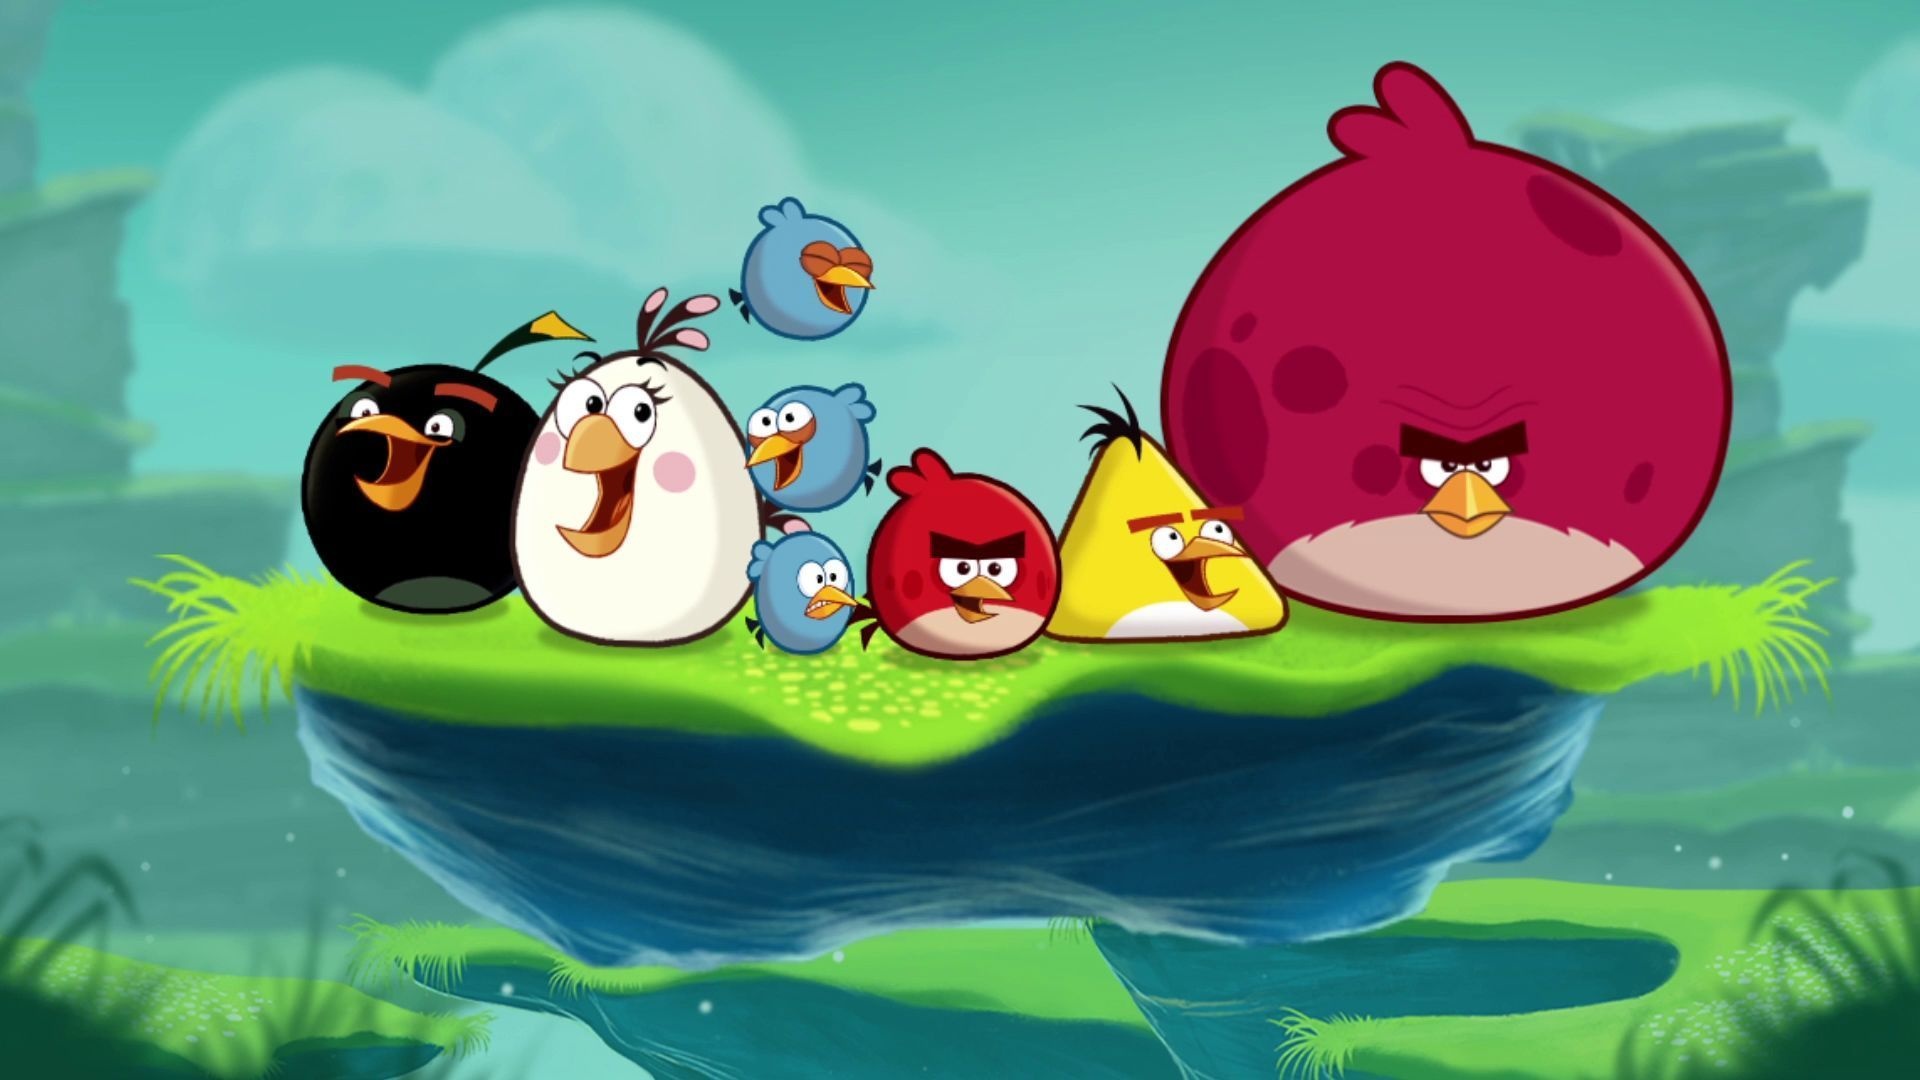 Angry Birds, Popular backgrounds, Fierce fowls, Bird wallpapers, 1920x1080 Full HD Desktop